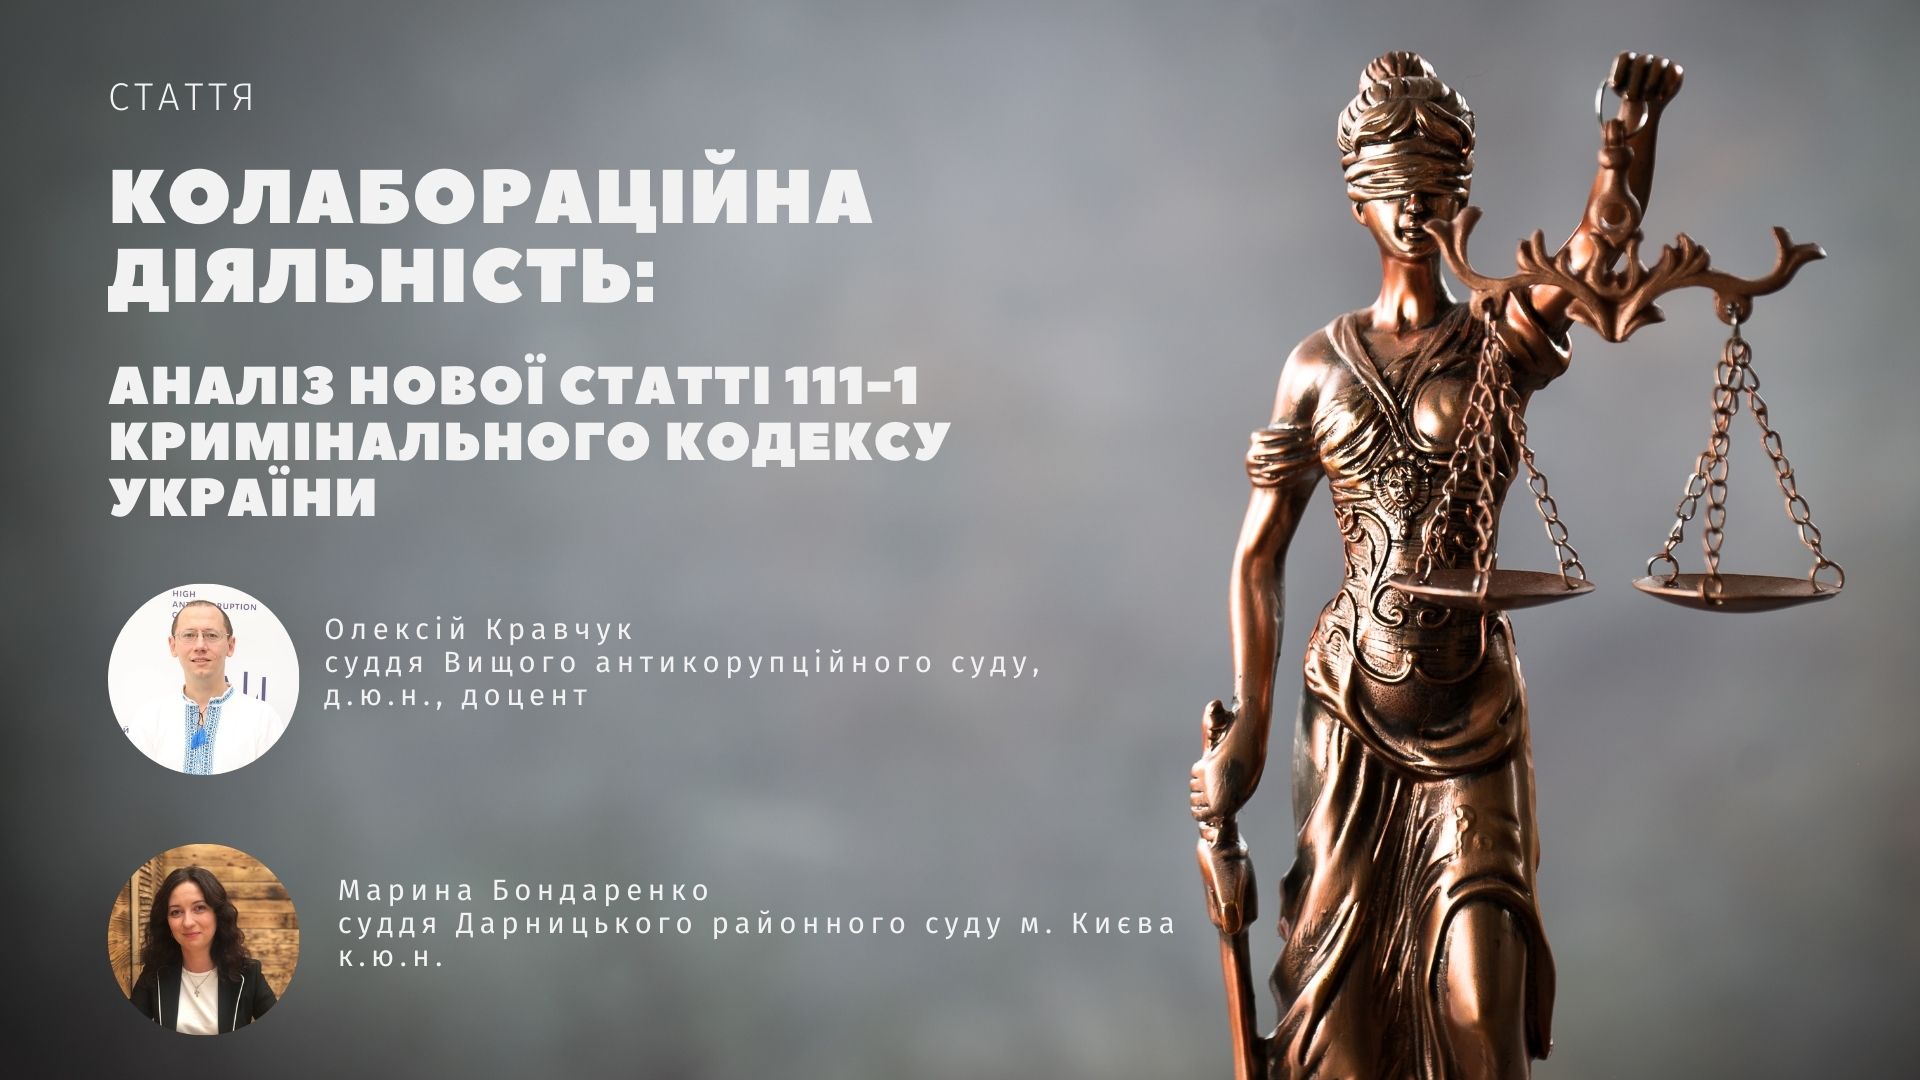 Стаття "КОЛАБОРАЦІЙНА ДІЯЛЬНІСТЬ: аналіз нової статті 111-1 Кримінального кодексу України"